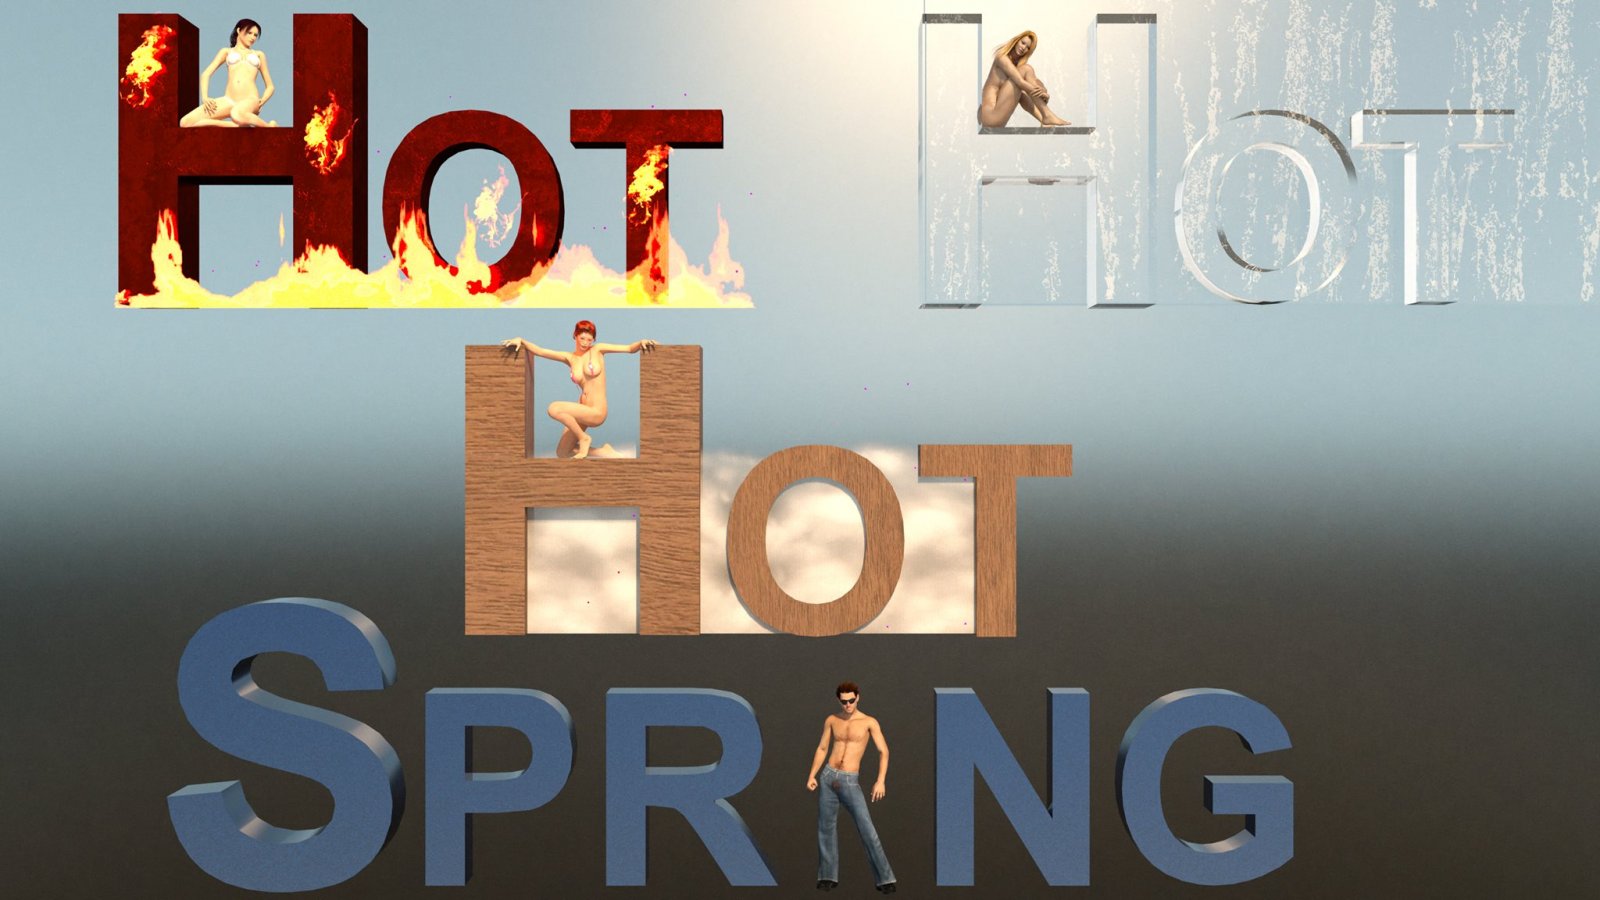 Hot spring game